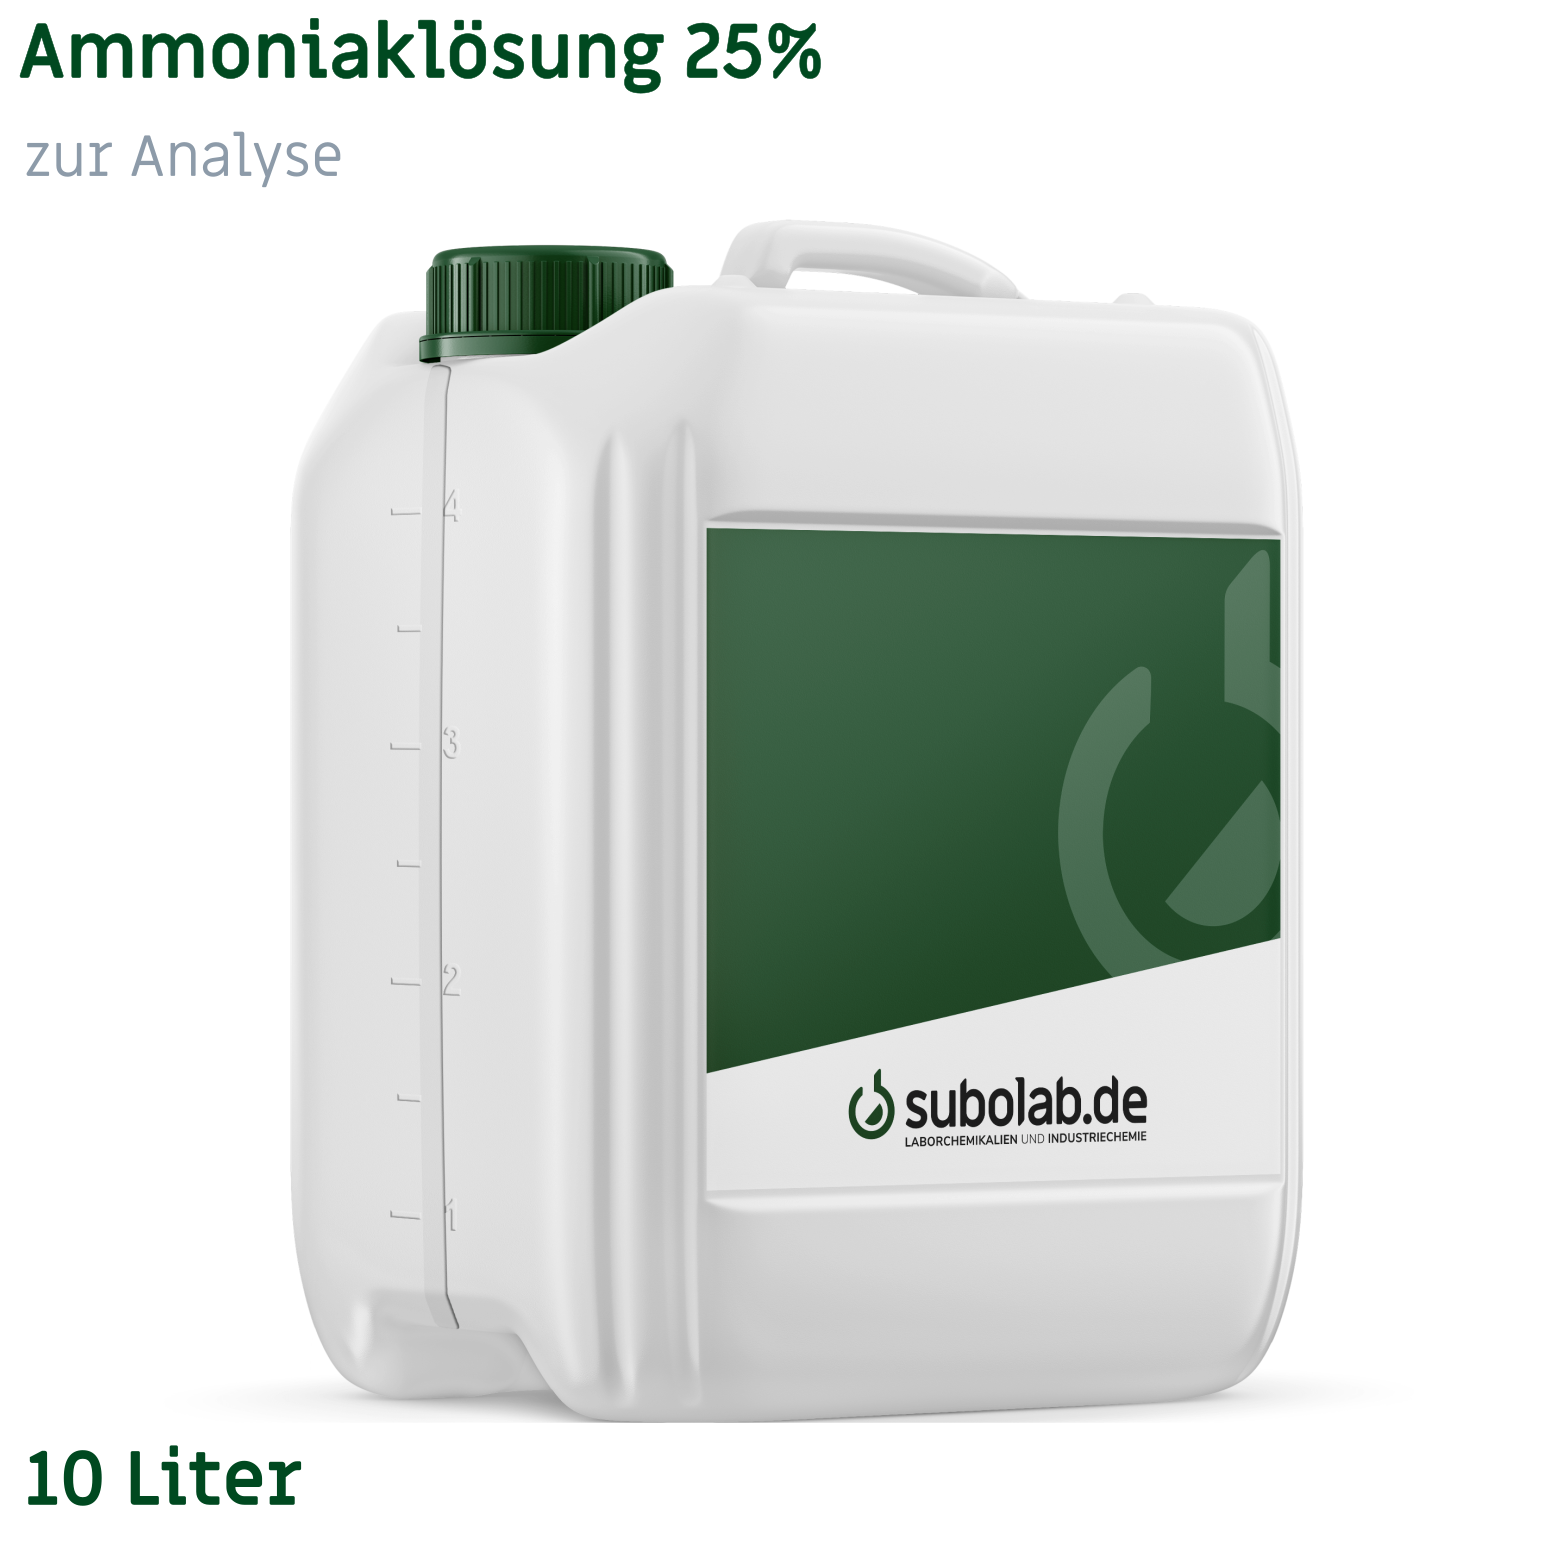 Bild von Ammoniaklösung 25% zur Analyse (10 Liter)